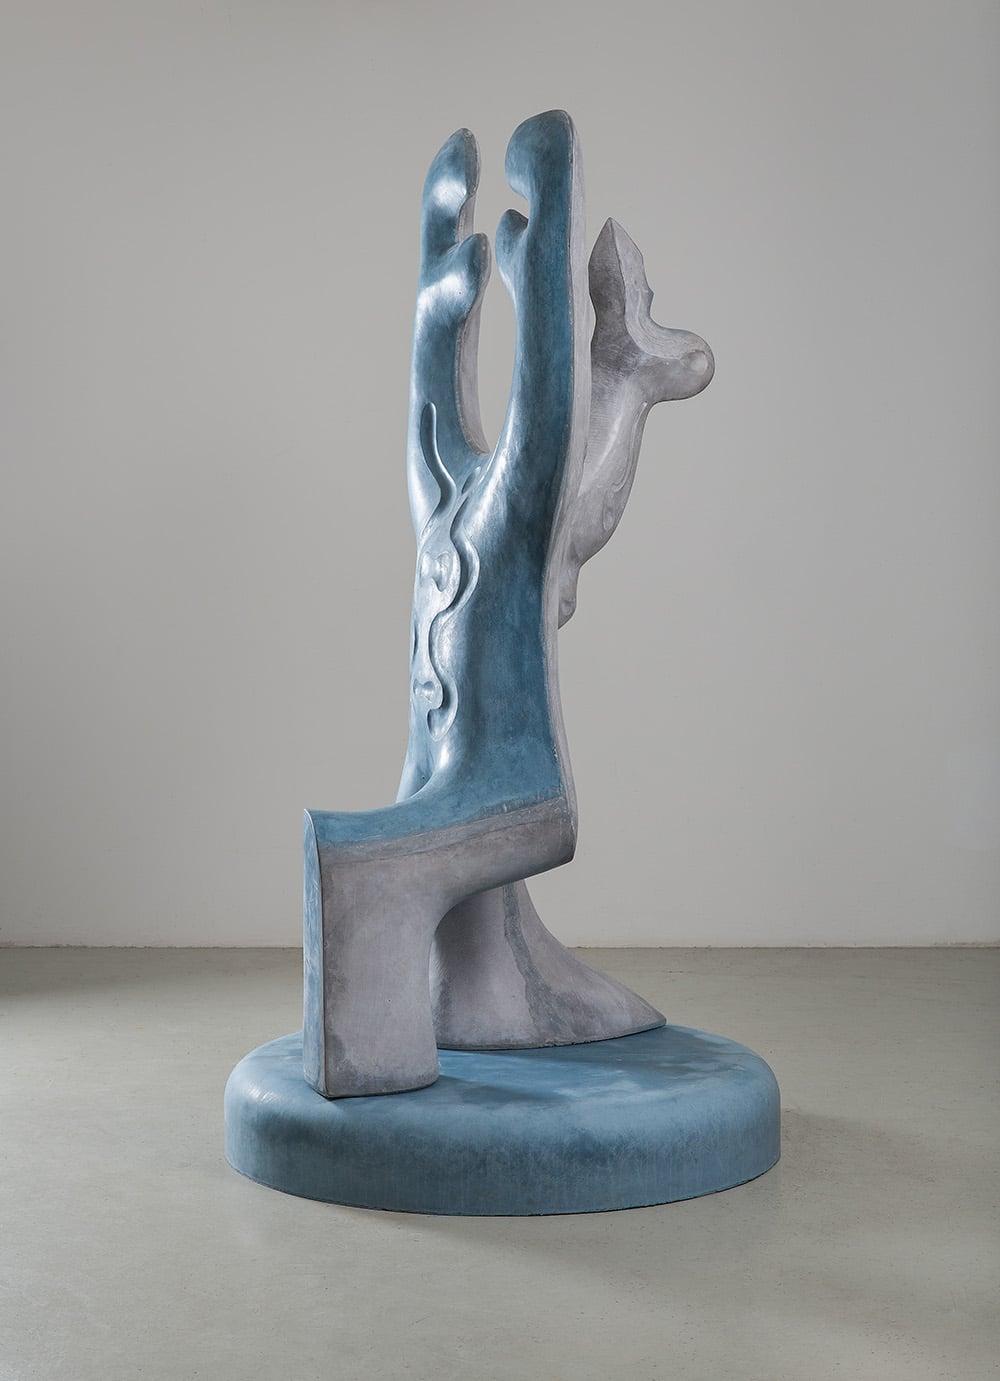 Big Creature by Pavlína Kvita - Contemporary sculpture, futuristic figure, grey For Sale 1